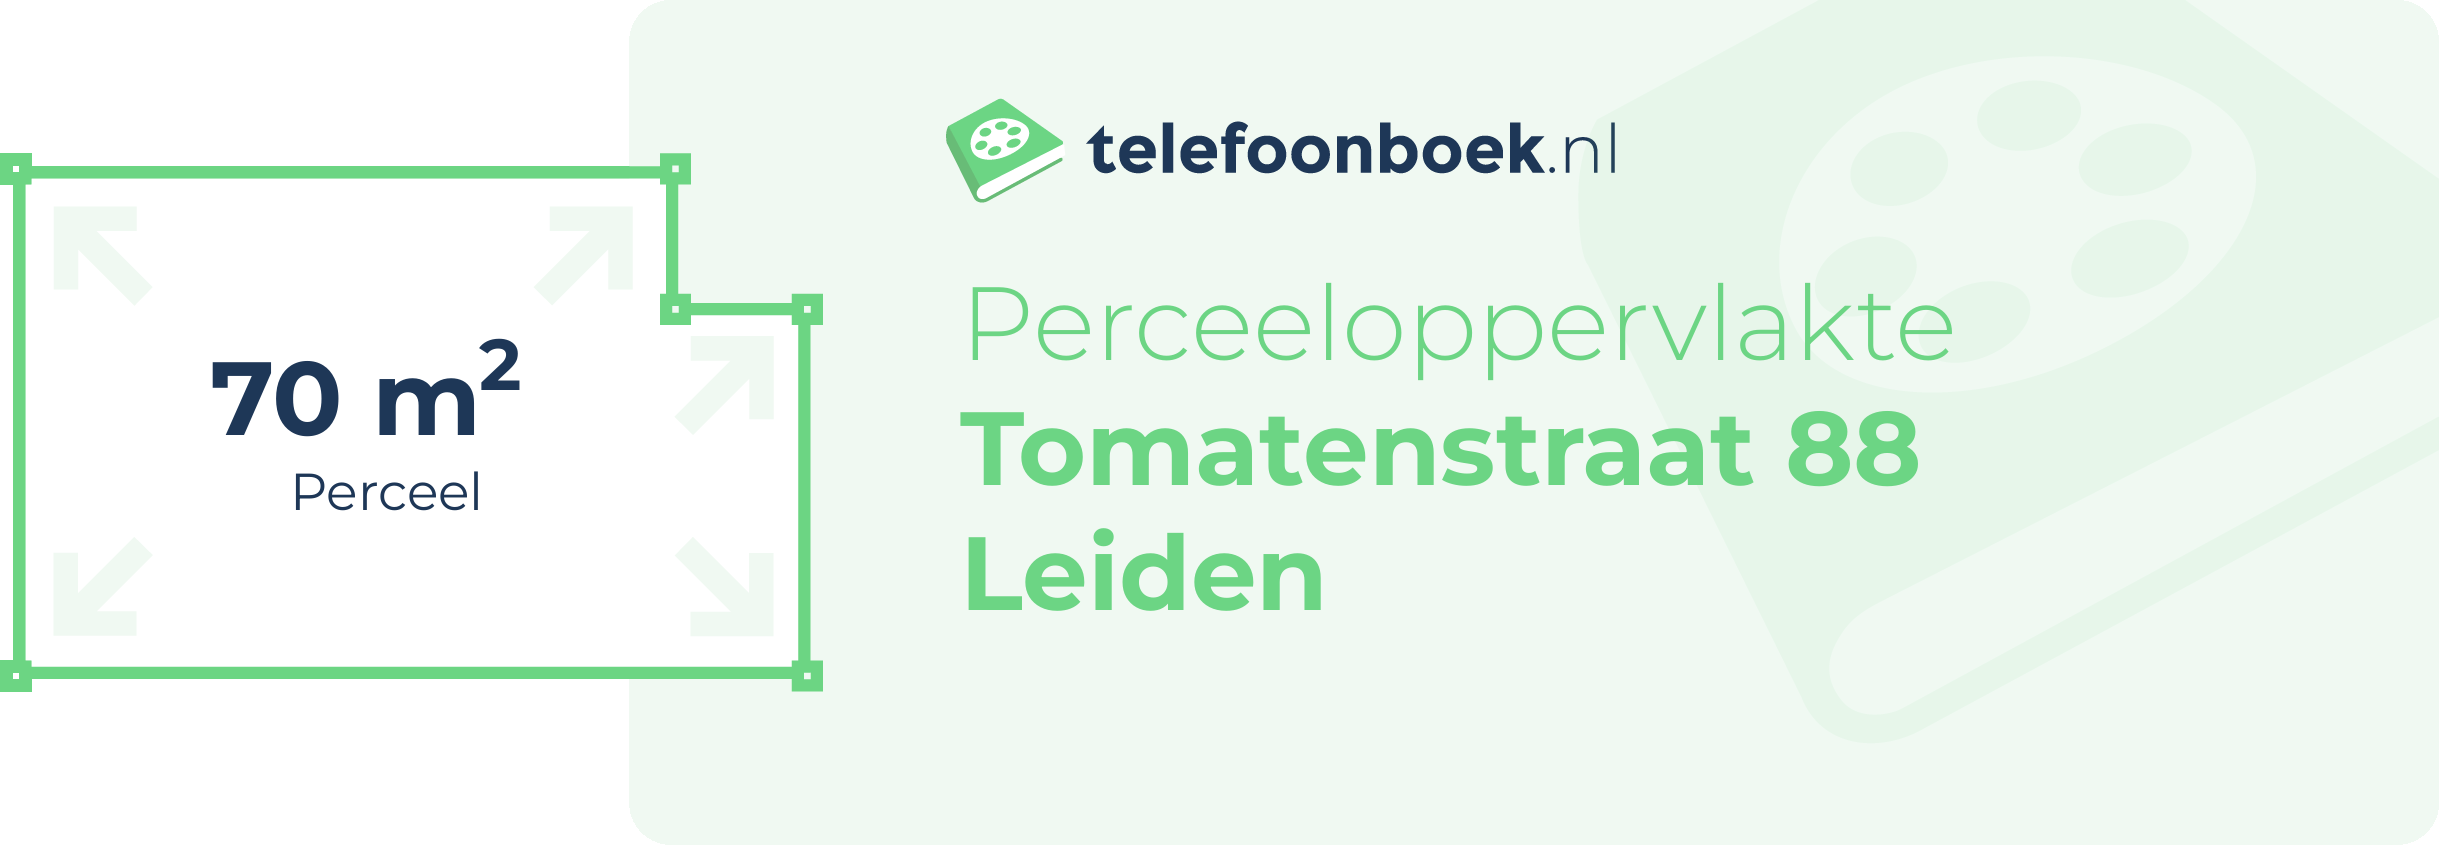 Perceeloppervlakte Tomatenstraat 88 Leiden